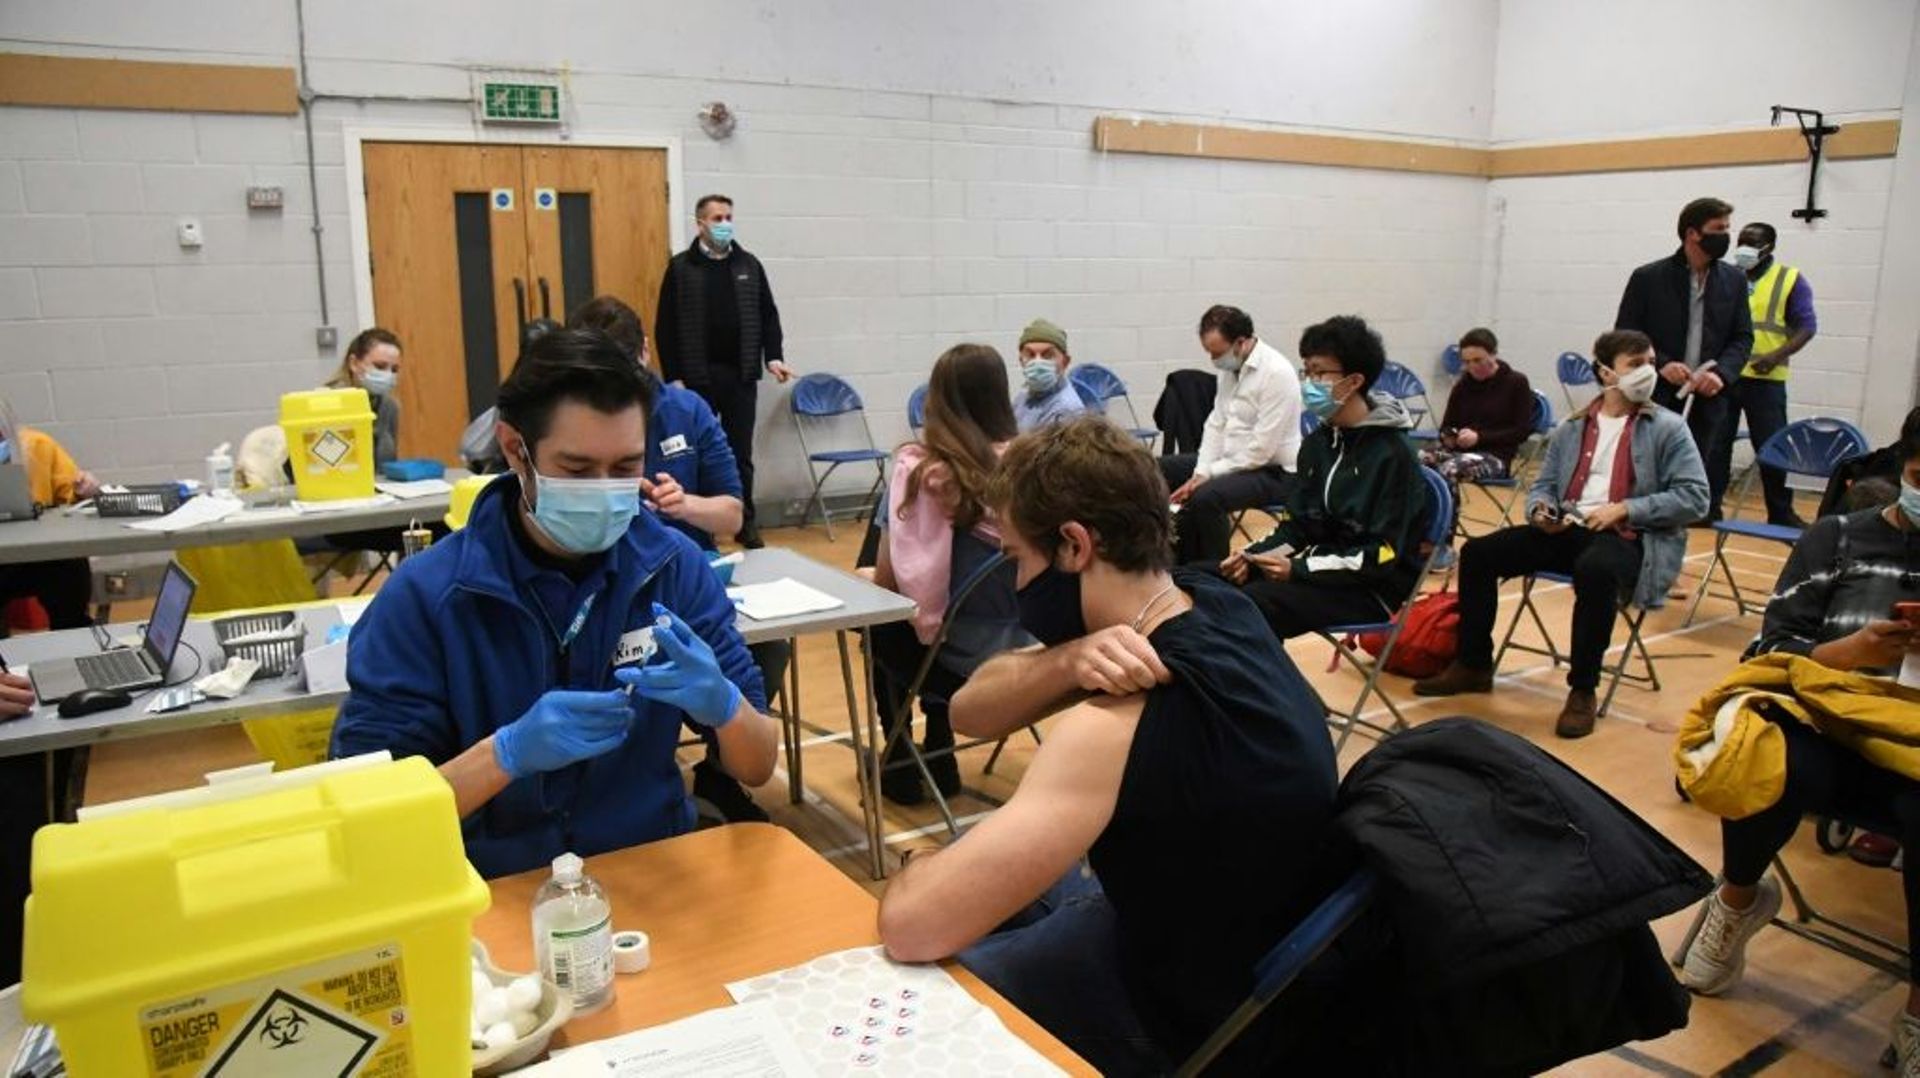 Des personnes se font vacciner contre le Covid-19, le 13 décembre 2021 à Londres